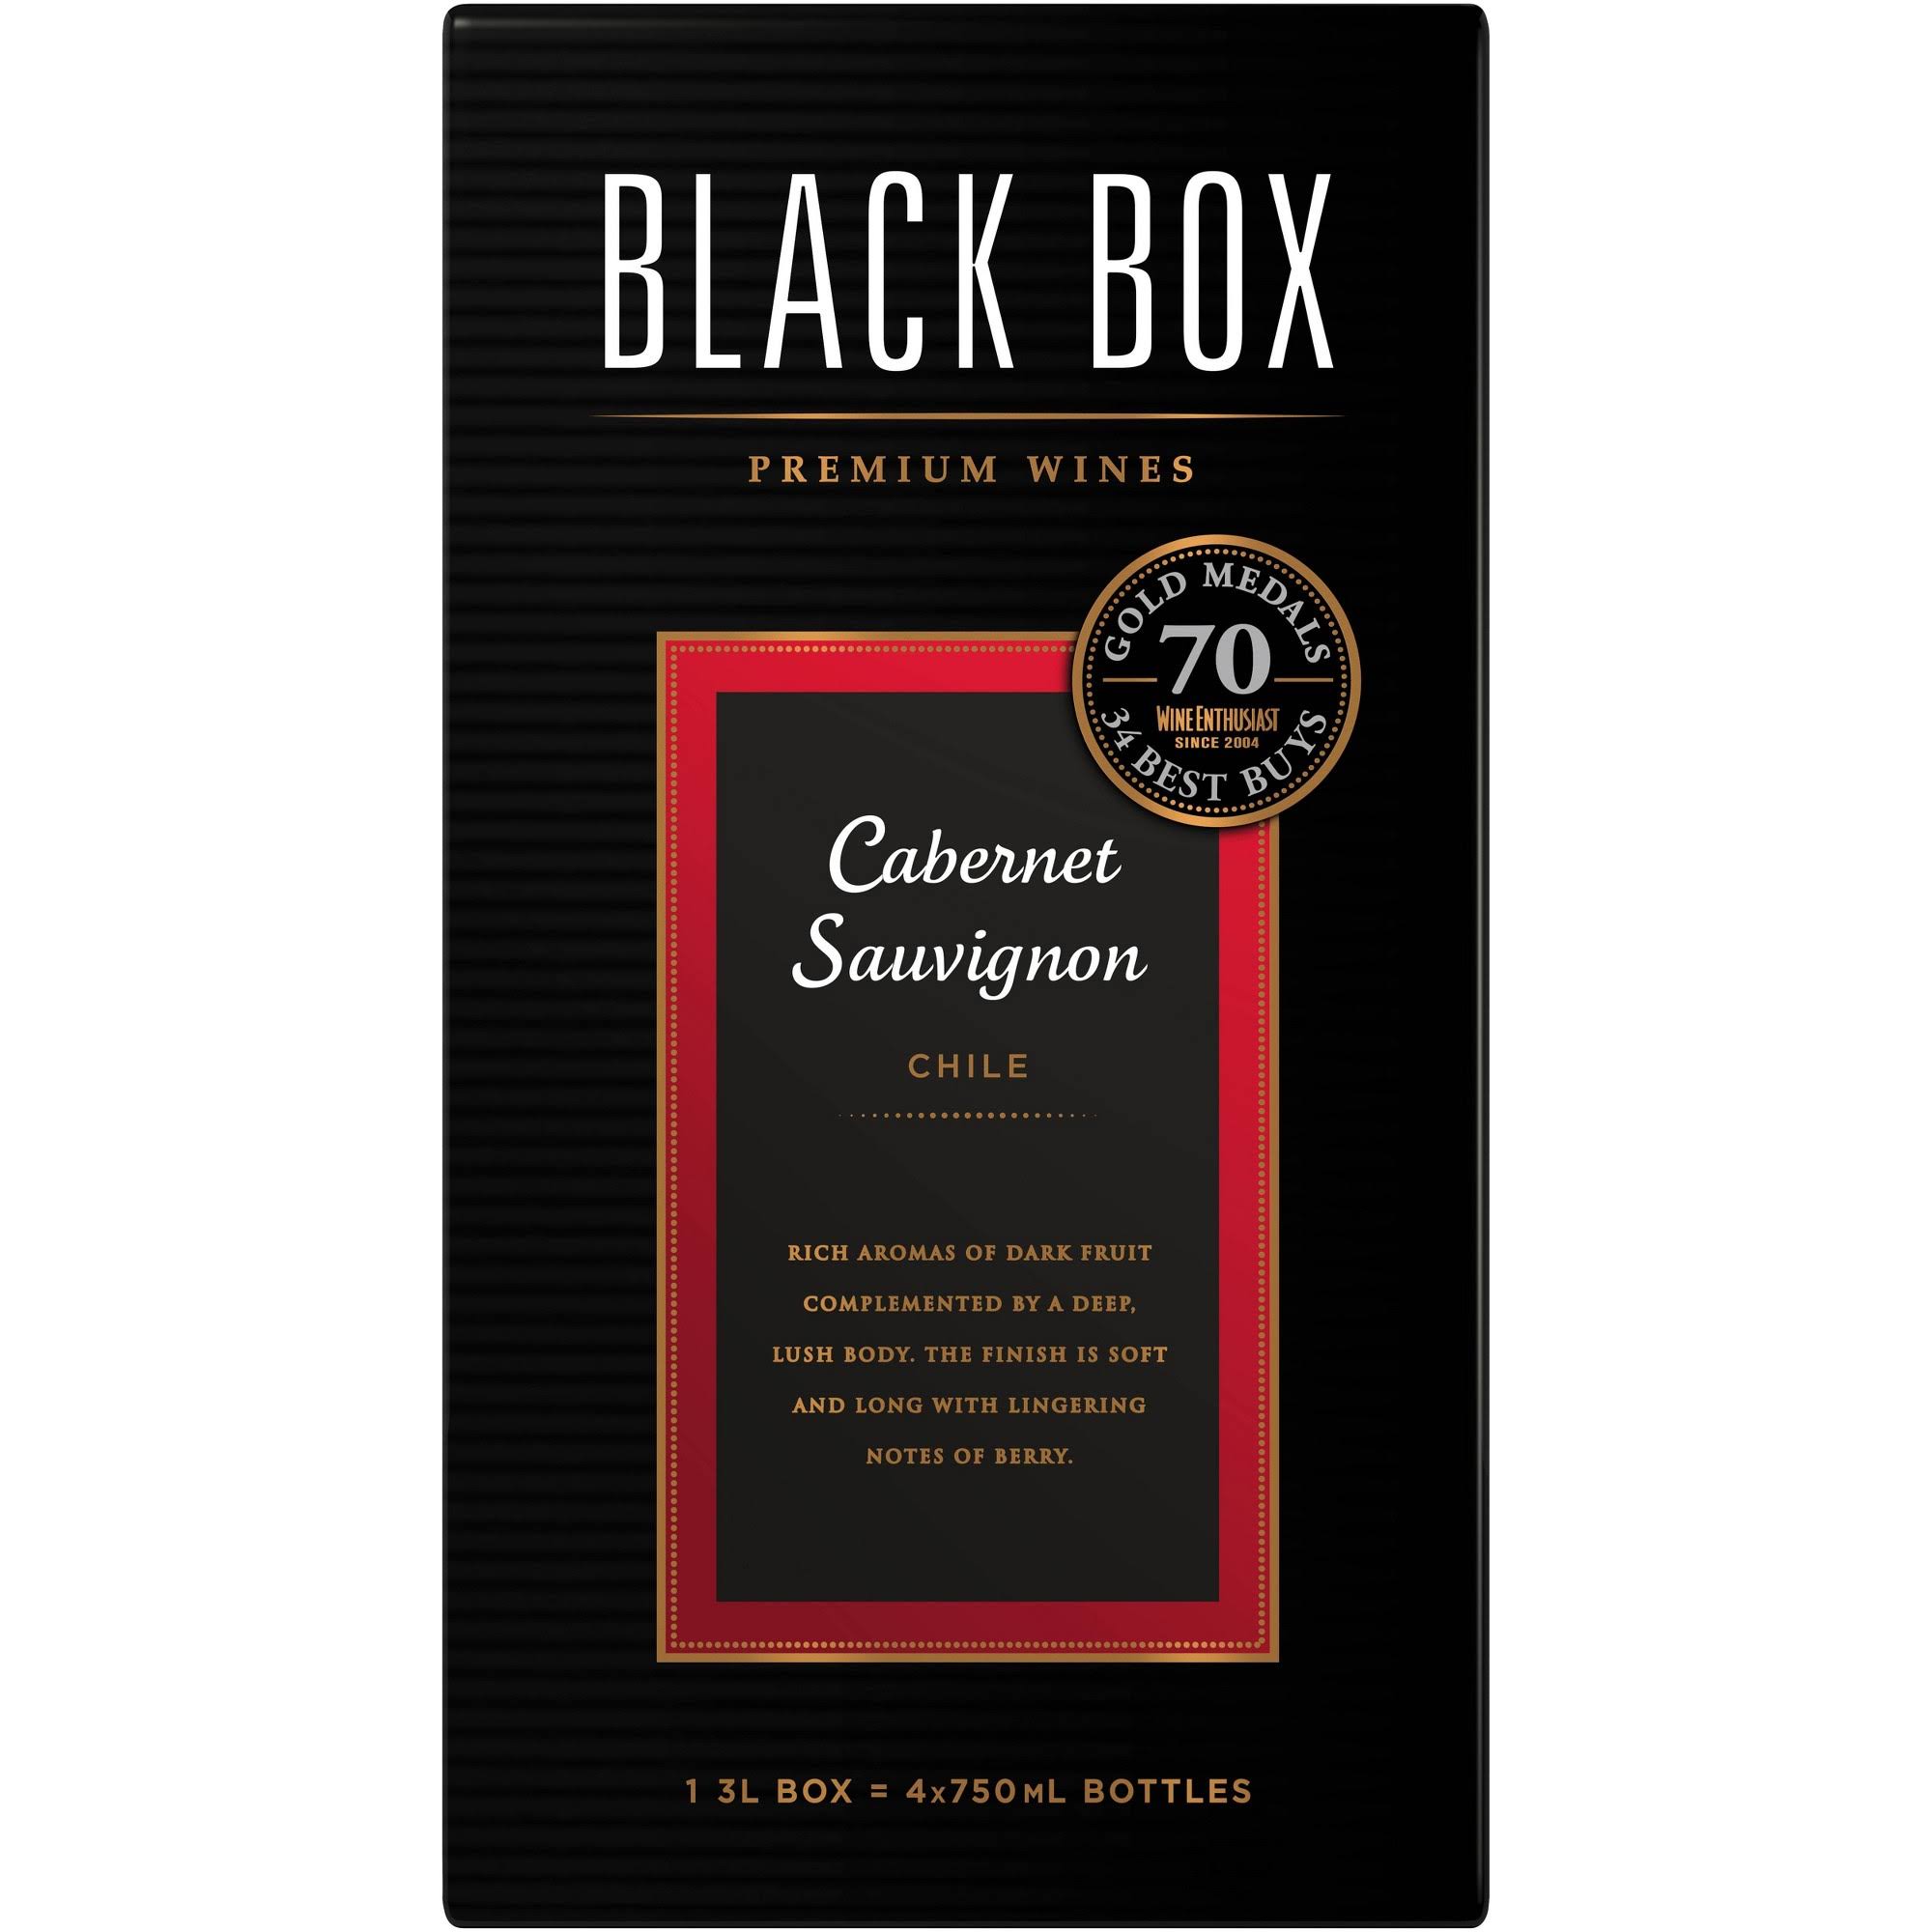 Black Box Cabernet Sauvignon, California, 2007 - 3 liters